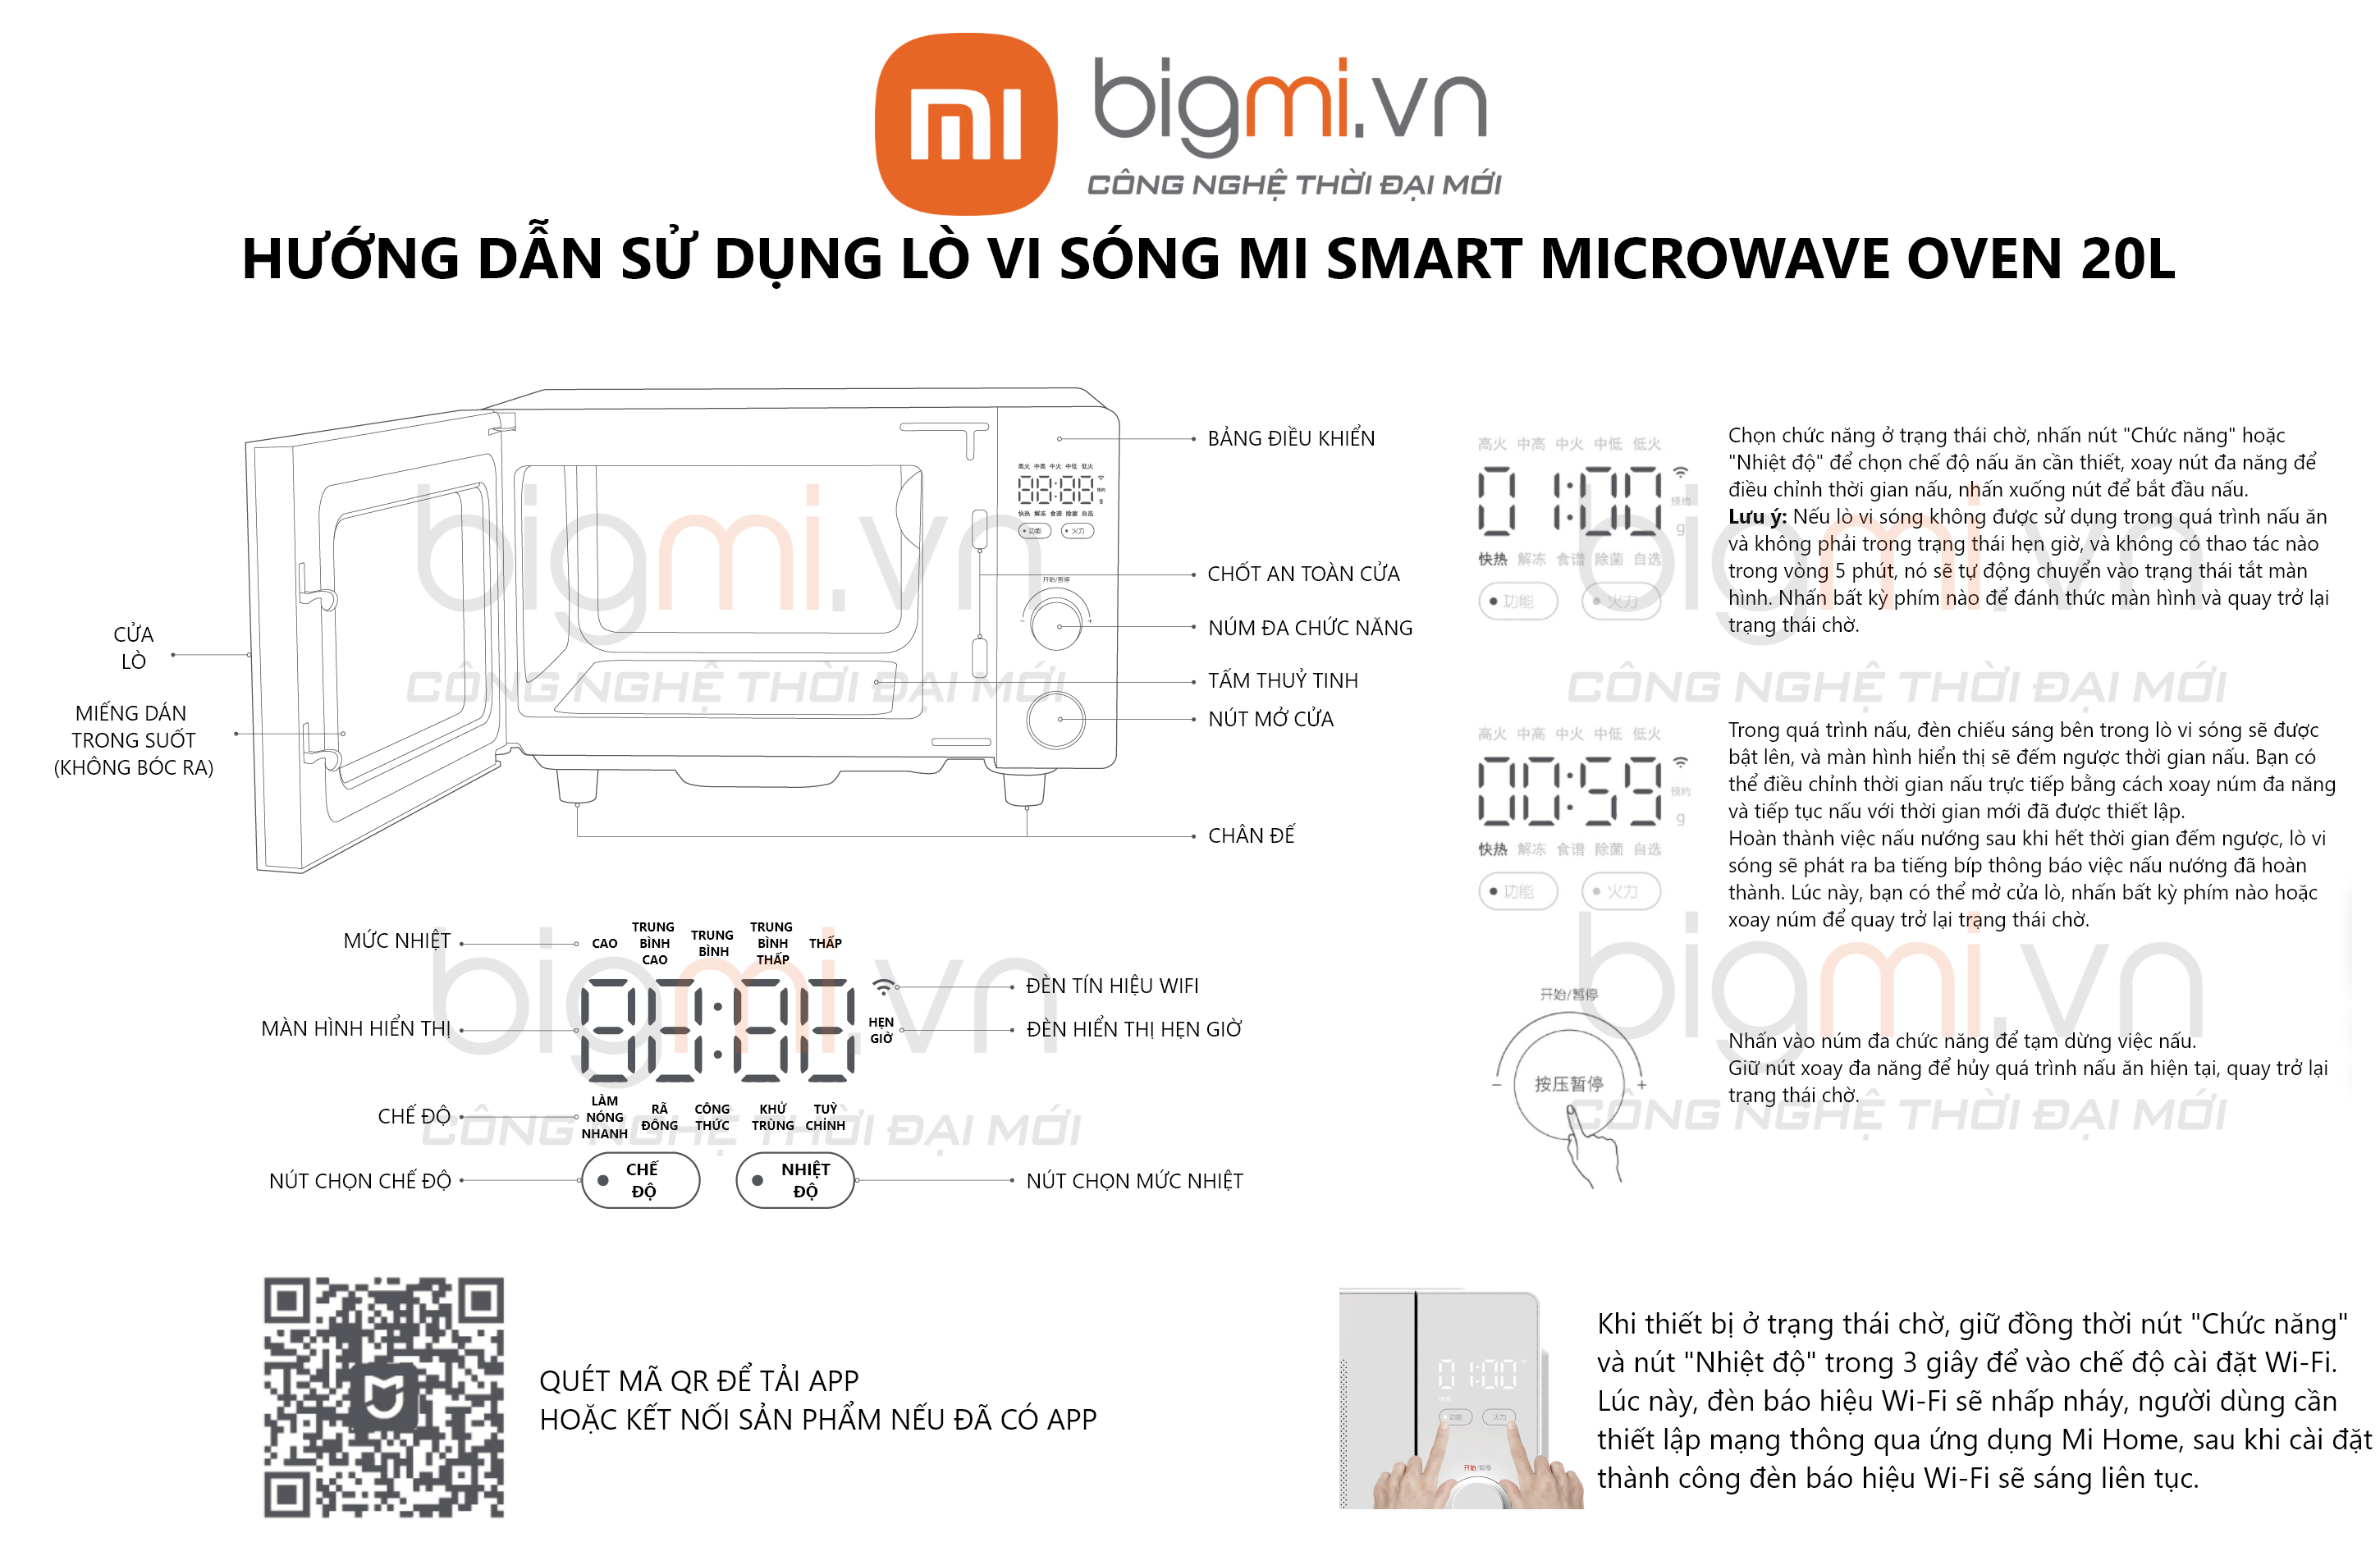 HDSD Lo vi song Microwave owen